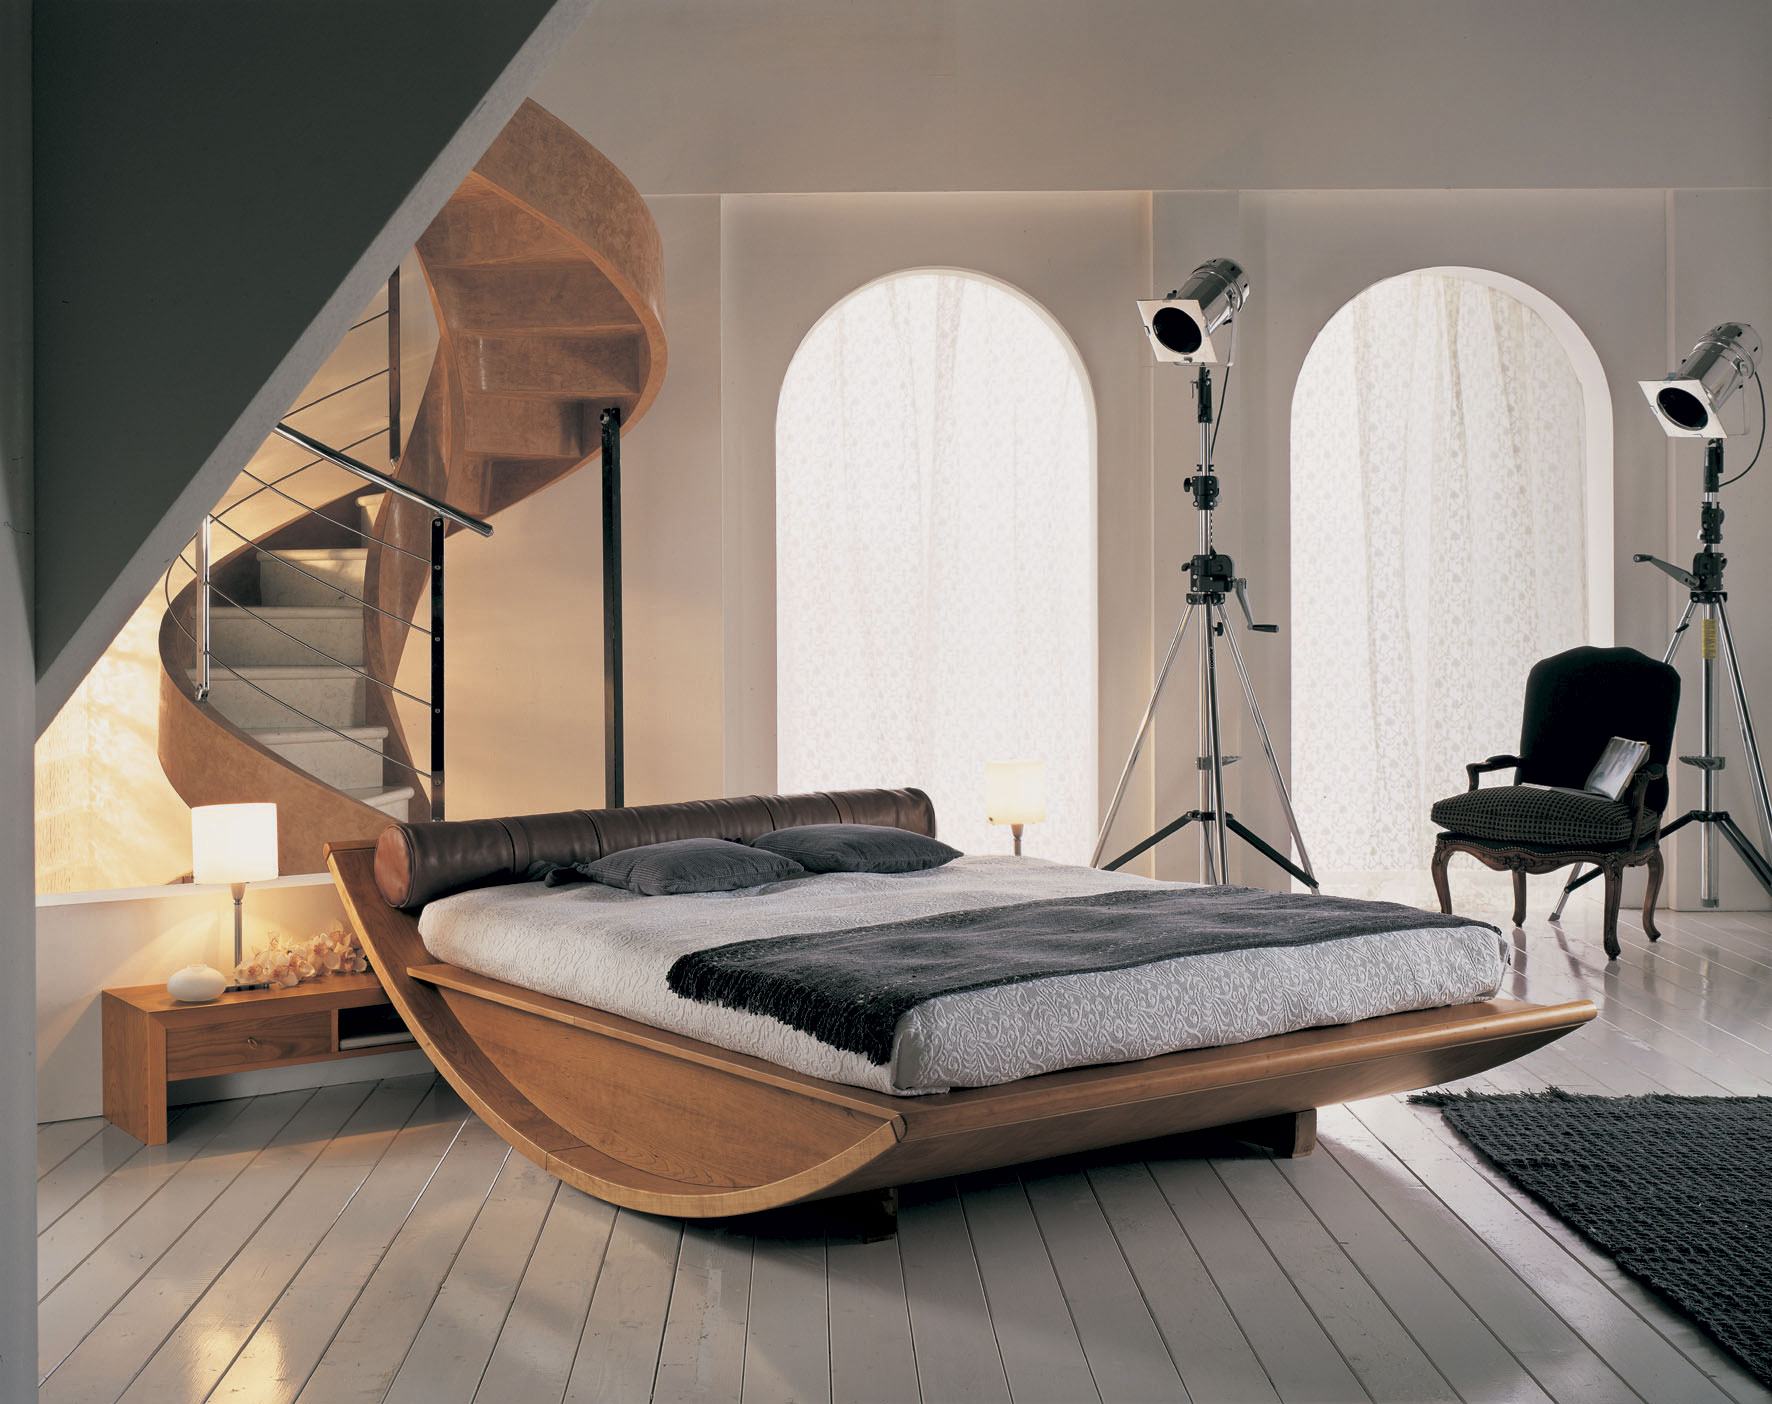 Vitaly in the bedroom. Необычные кровати. Необычные кровати двуспальные. Дизайнерская кровать. Оригинальный интерьер спальни.